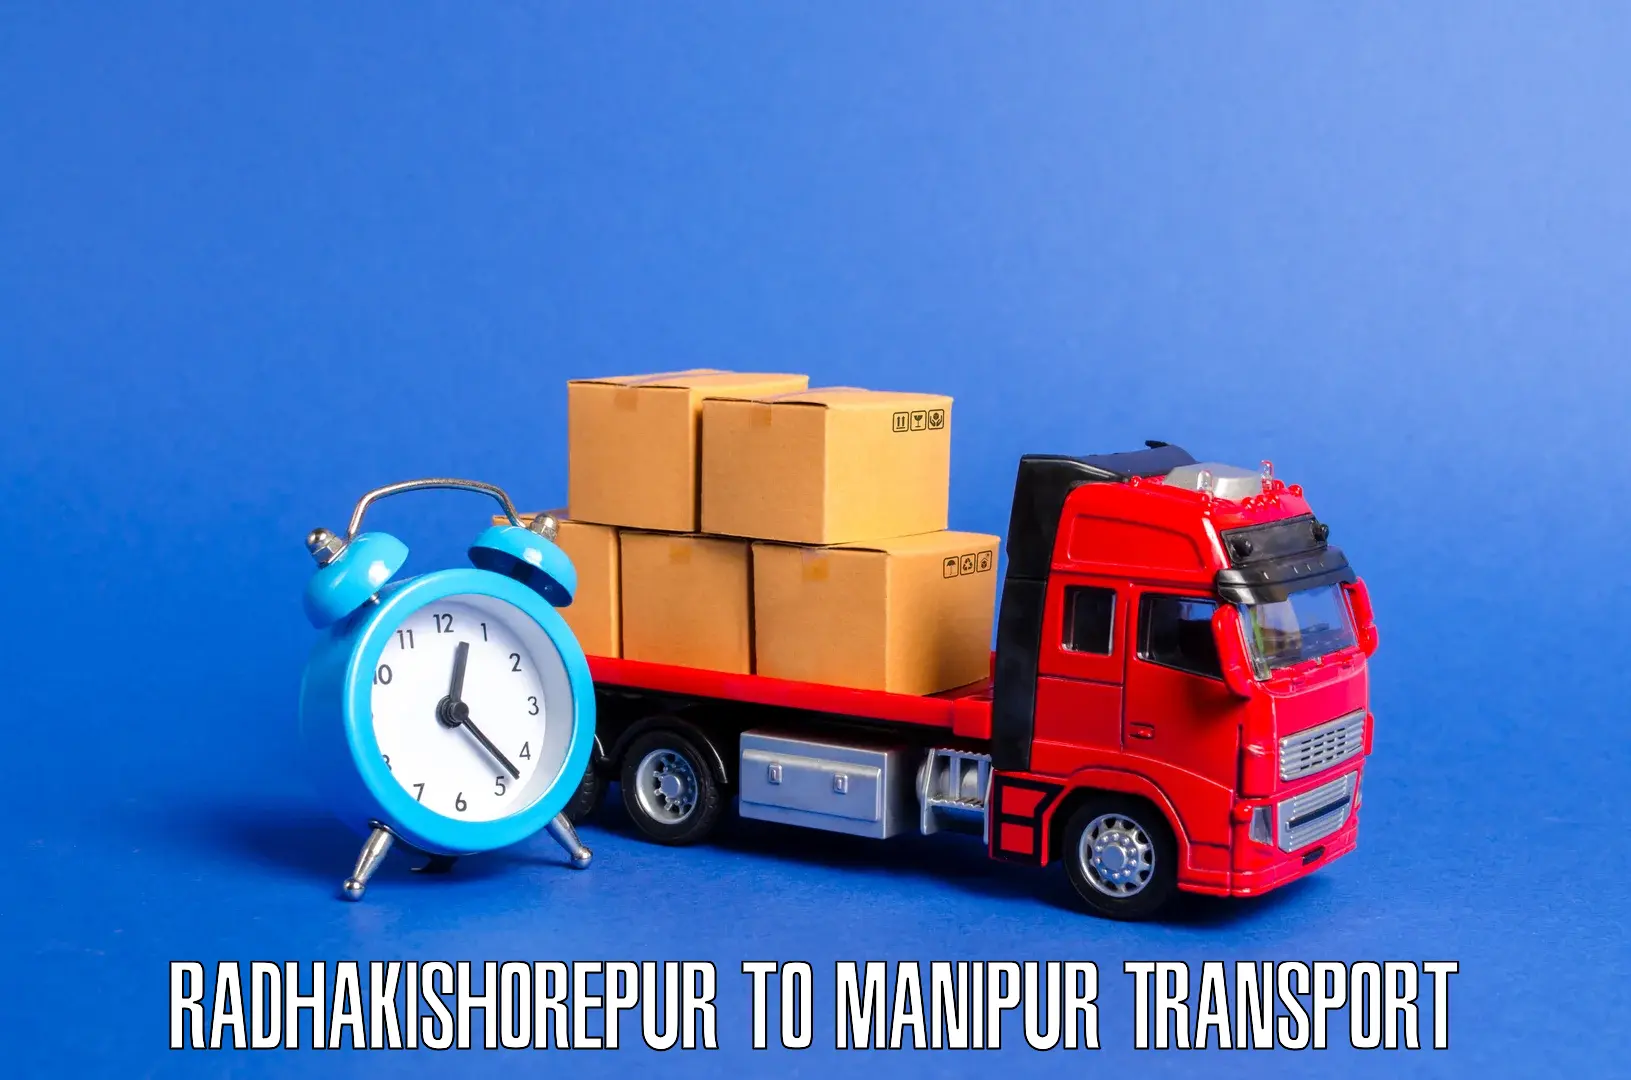 Vehicle transport services Radhakishorepur to Ukhrul